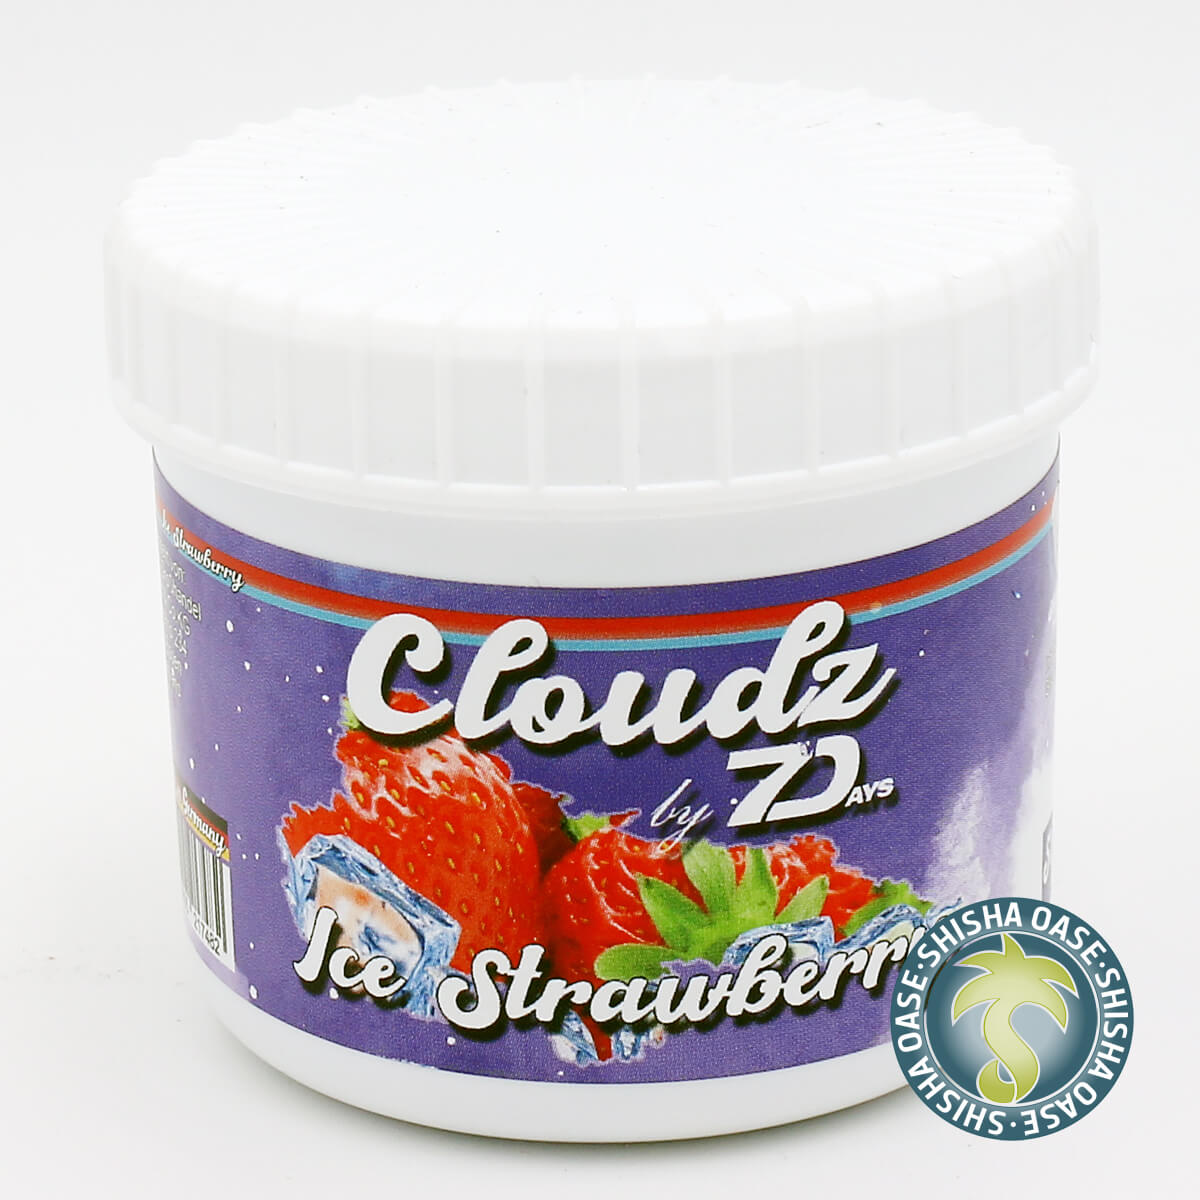 Cloudz by 7 Days Dampfsteine 50g | Ice Strawberry